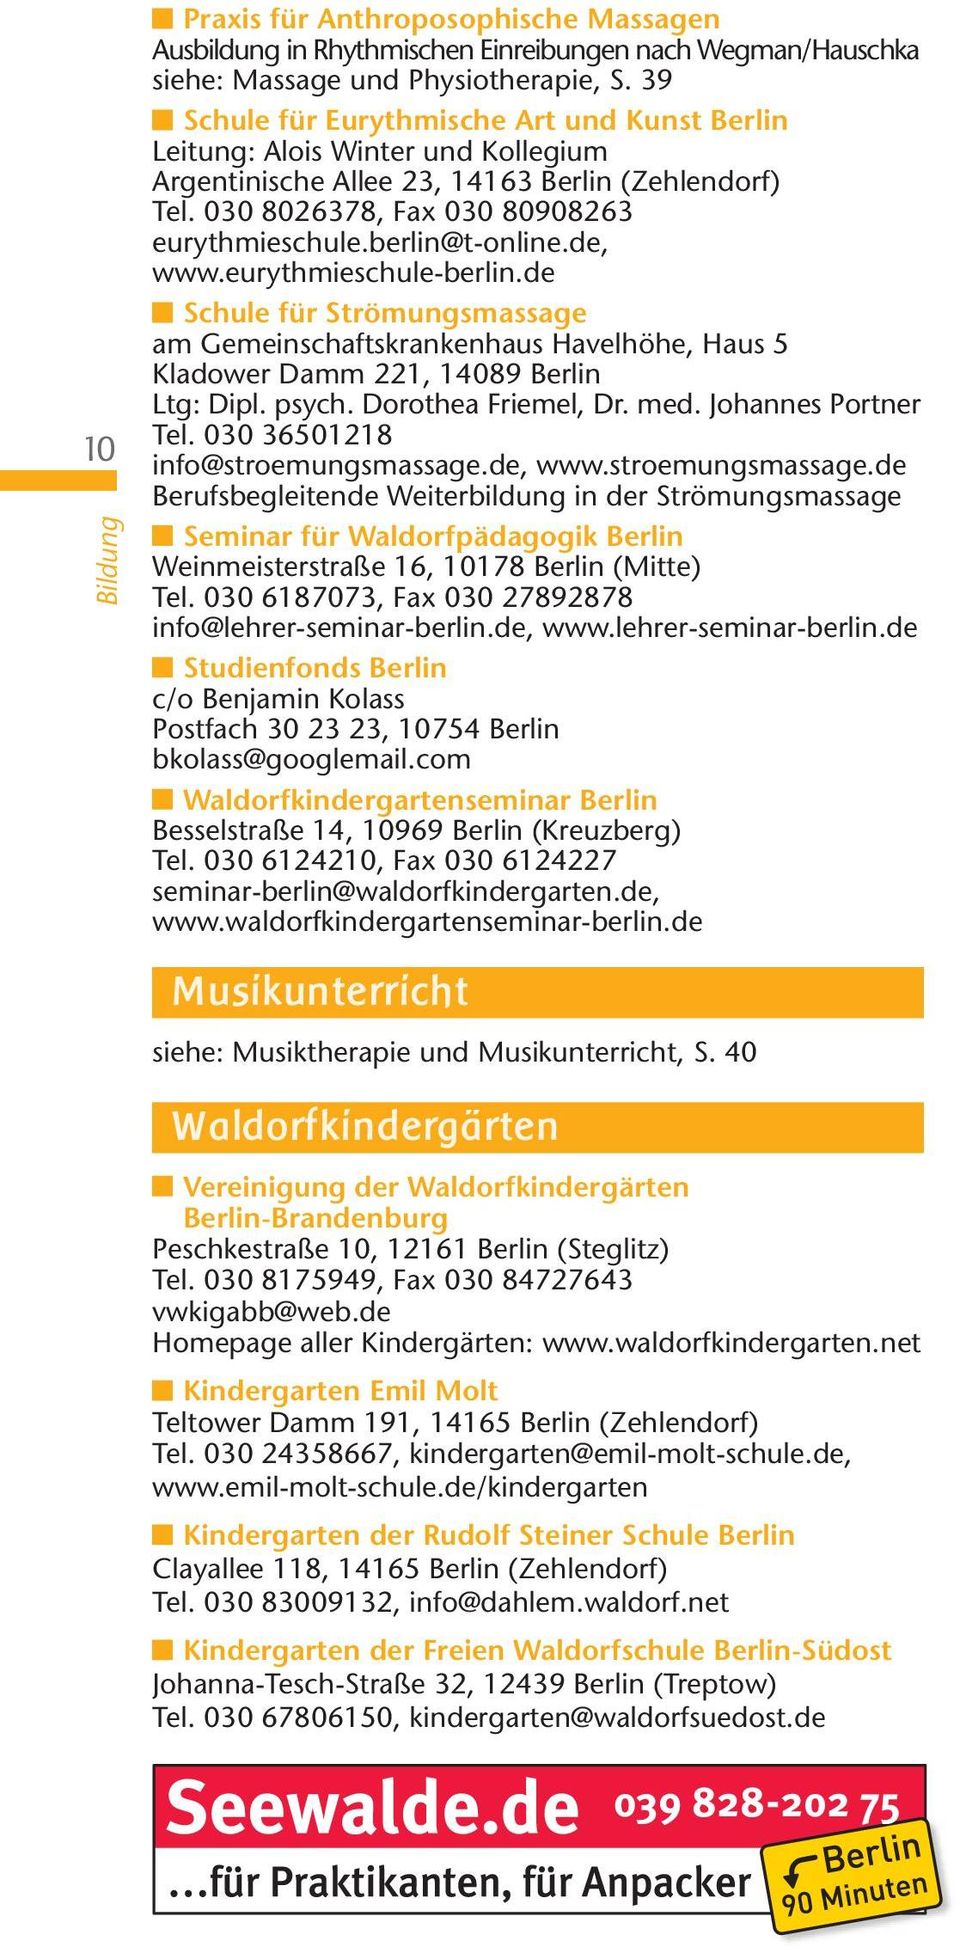 berlin@t-online.de, www.eurythmieschule-berlin.de Schule für Strömungsmassage am Gemeinschaftskrankenhaus Havelhöhe, Haus 5 Kladower Damm 221, 14089 Berlin Ltg: Dipl. psych. Dorothea Friemel, Dr. med.